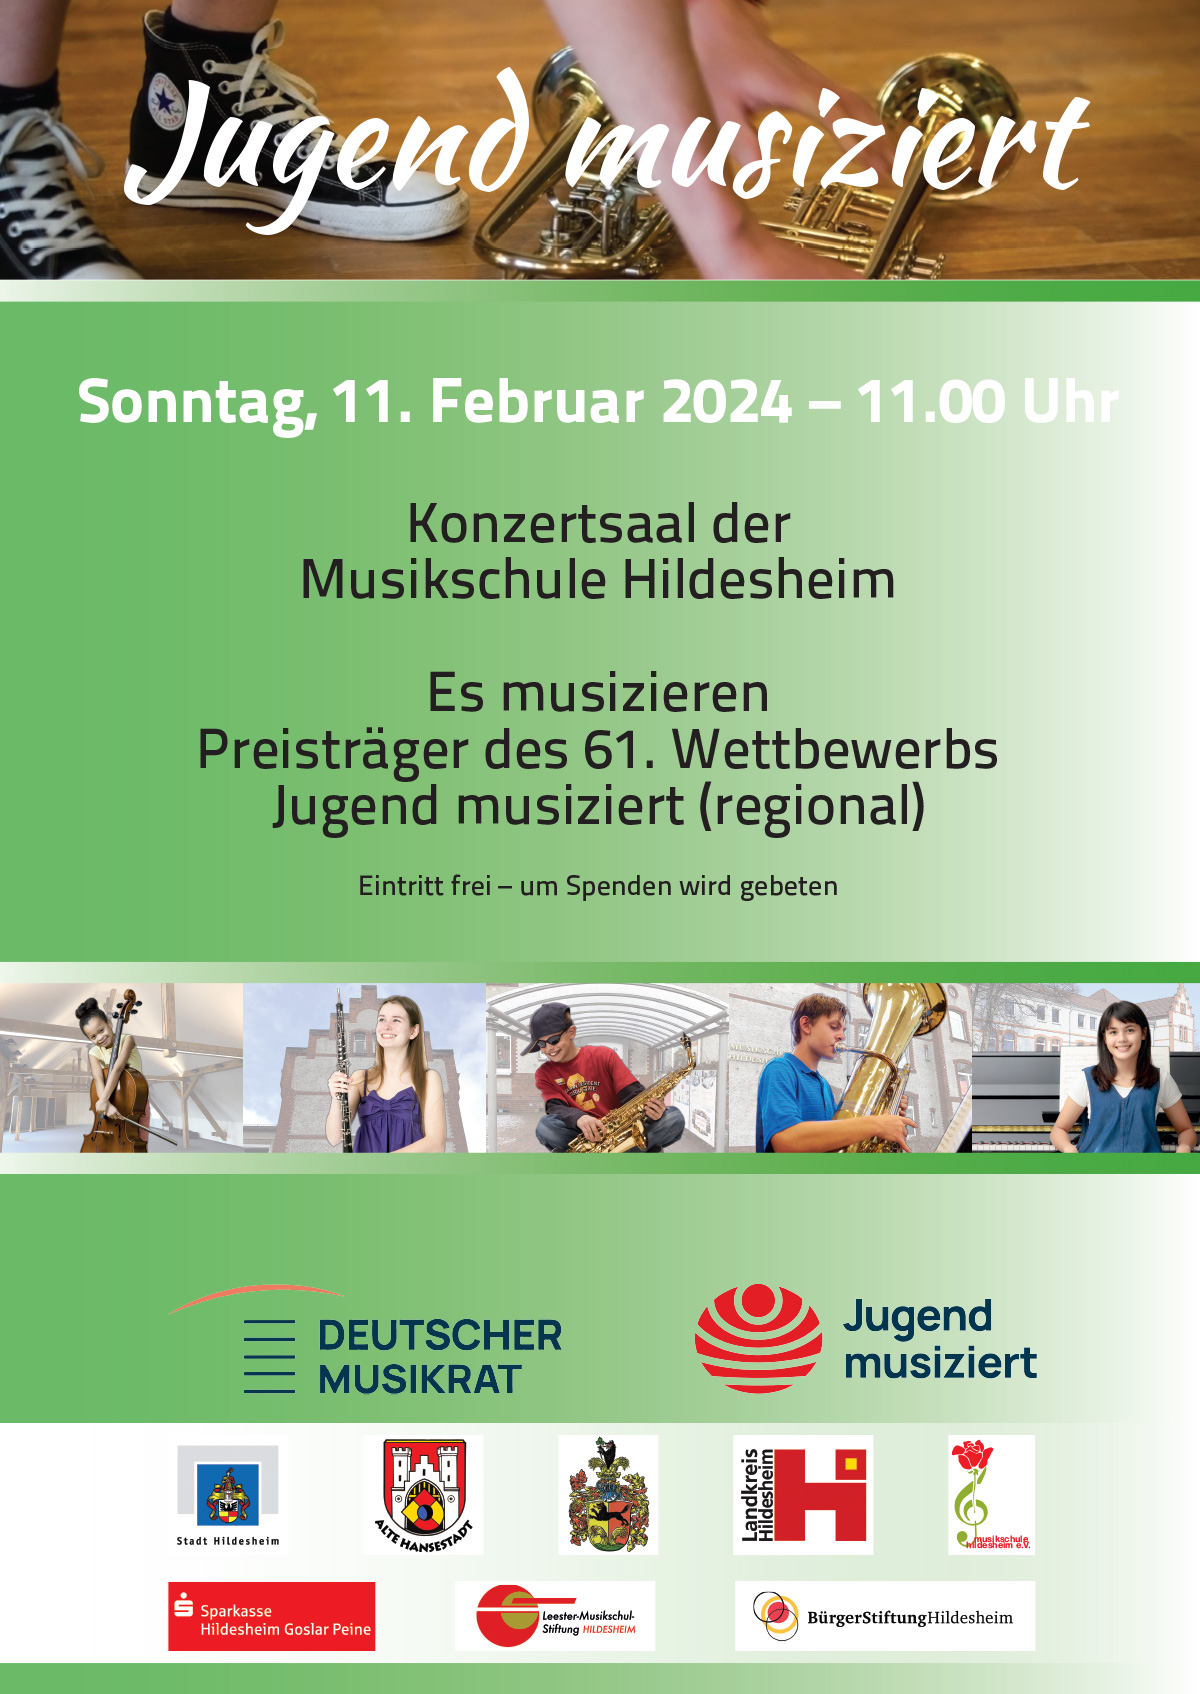 Jugend musiziert | Preisträgerkonzert am 11.02.2024